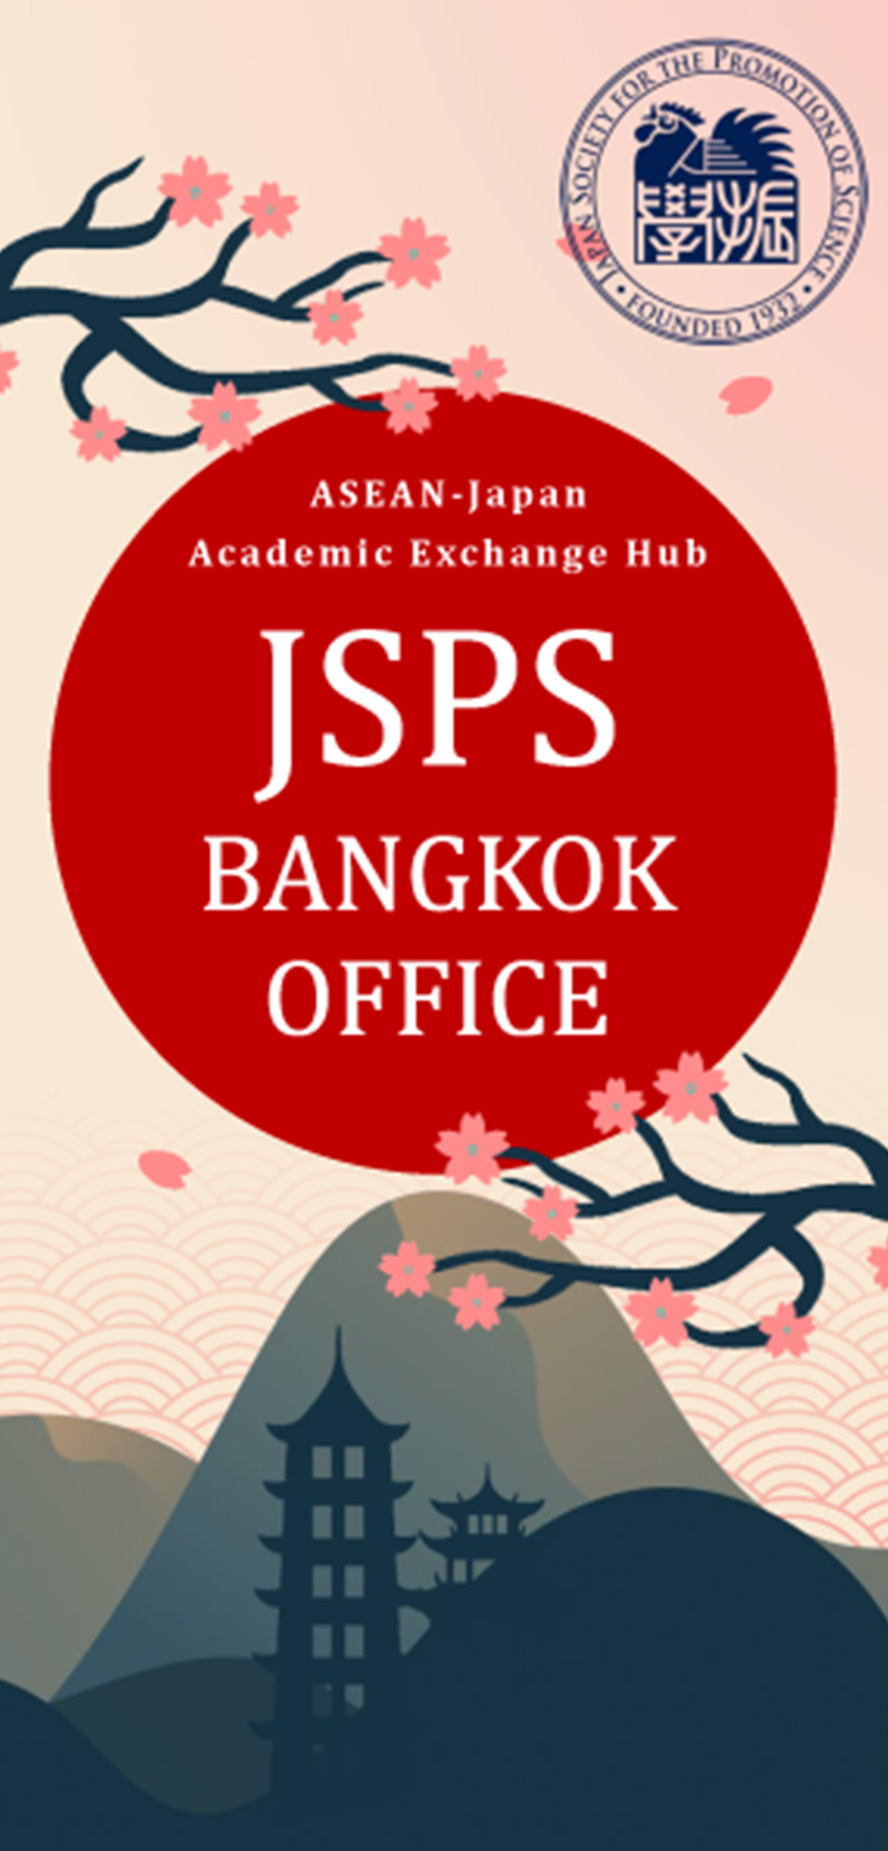 JSPSバンコク研究連絡センターの案内（英文）